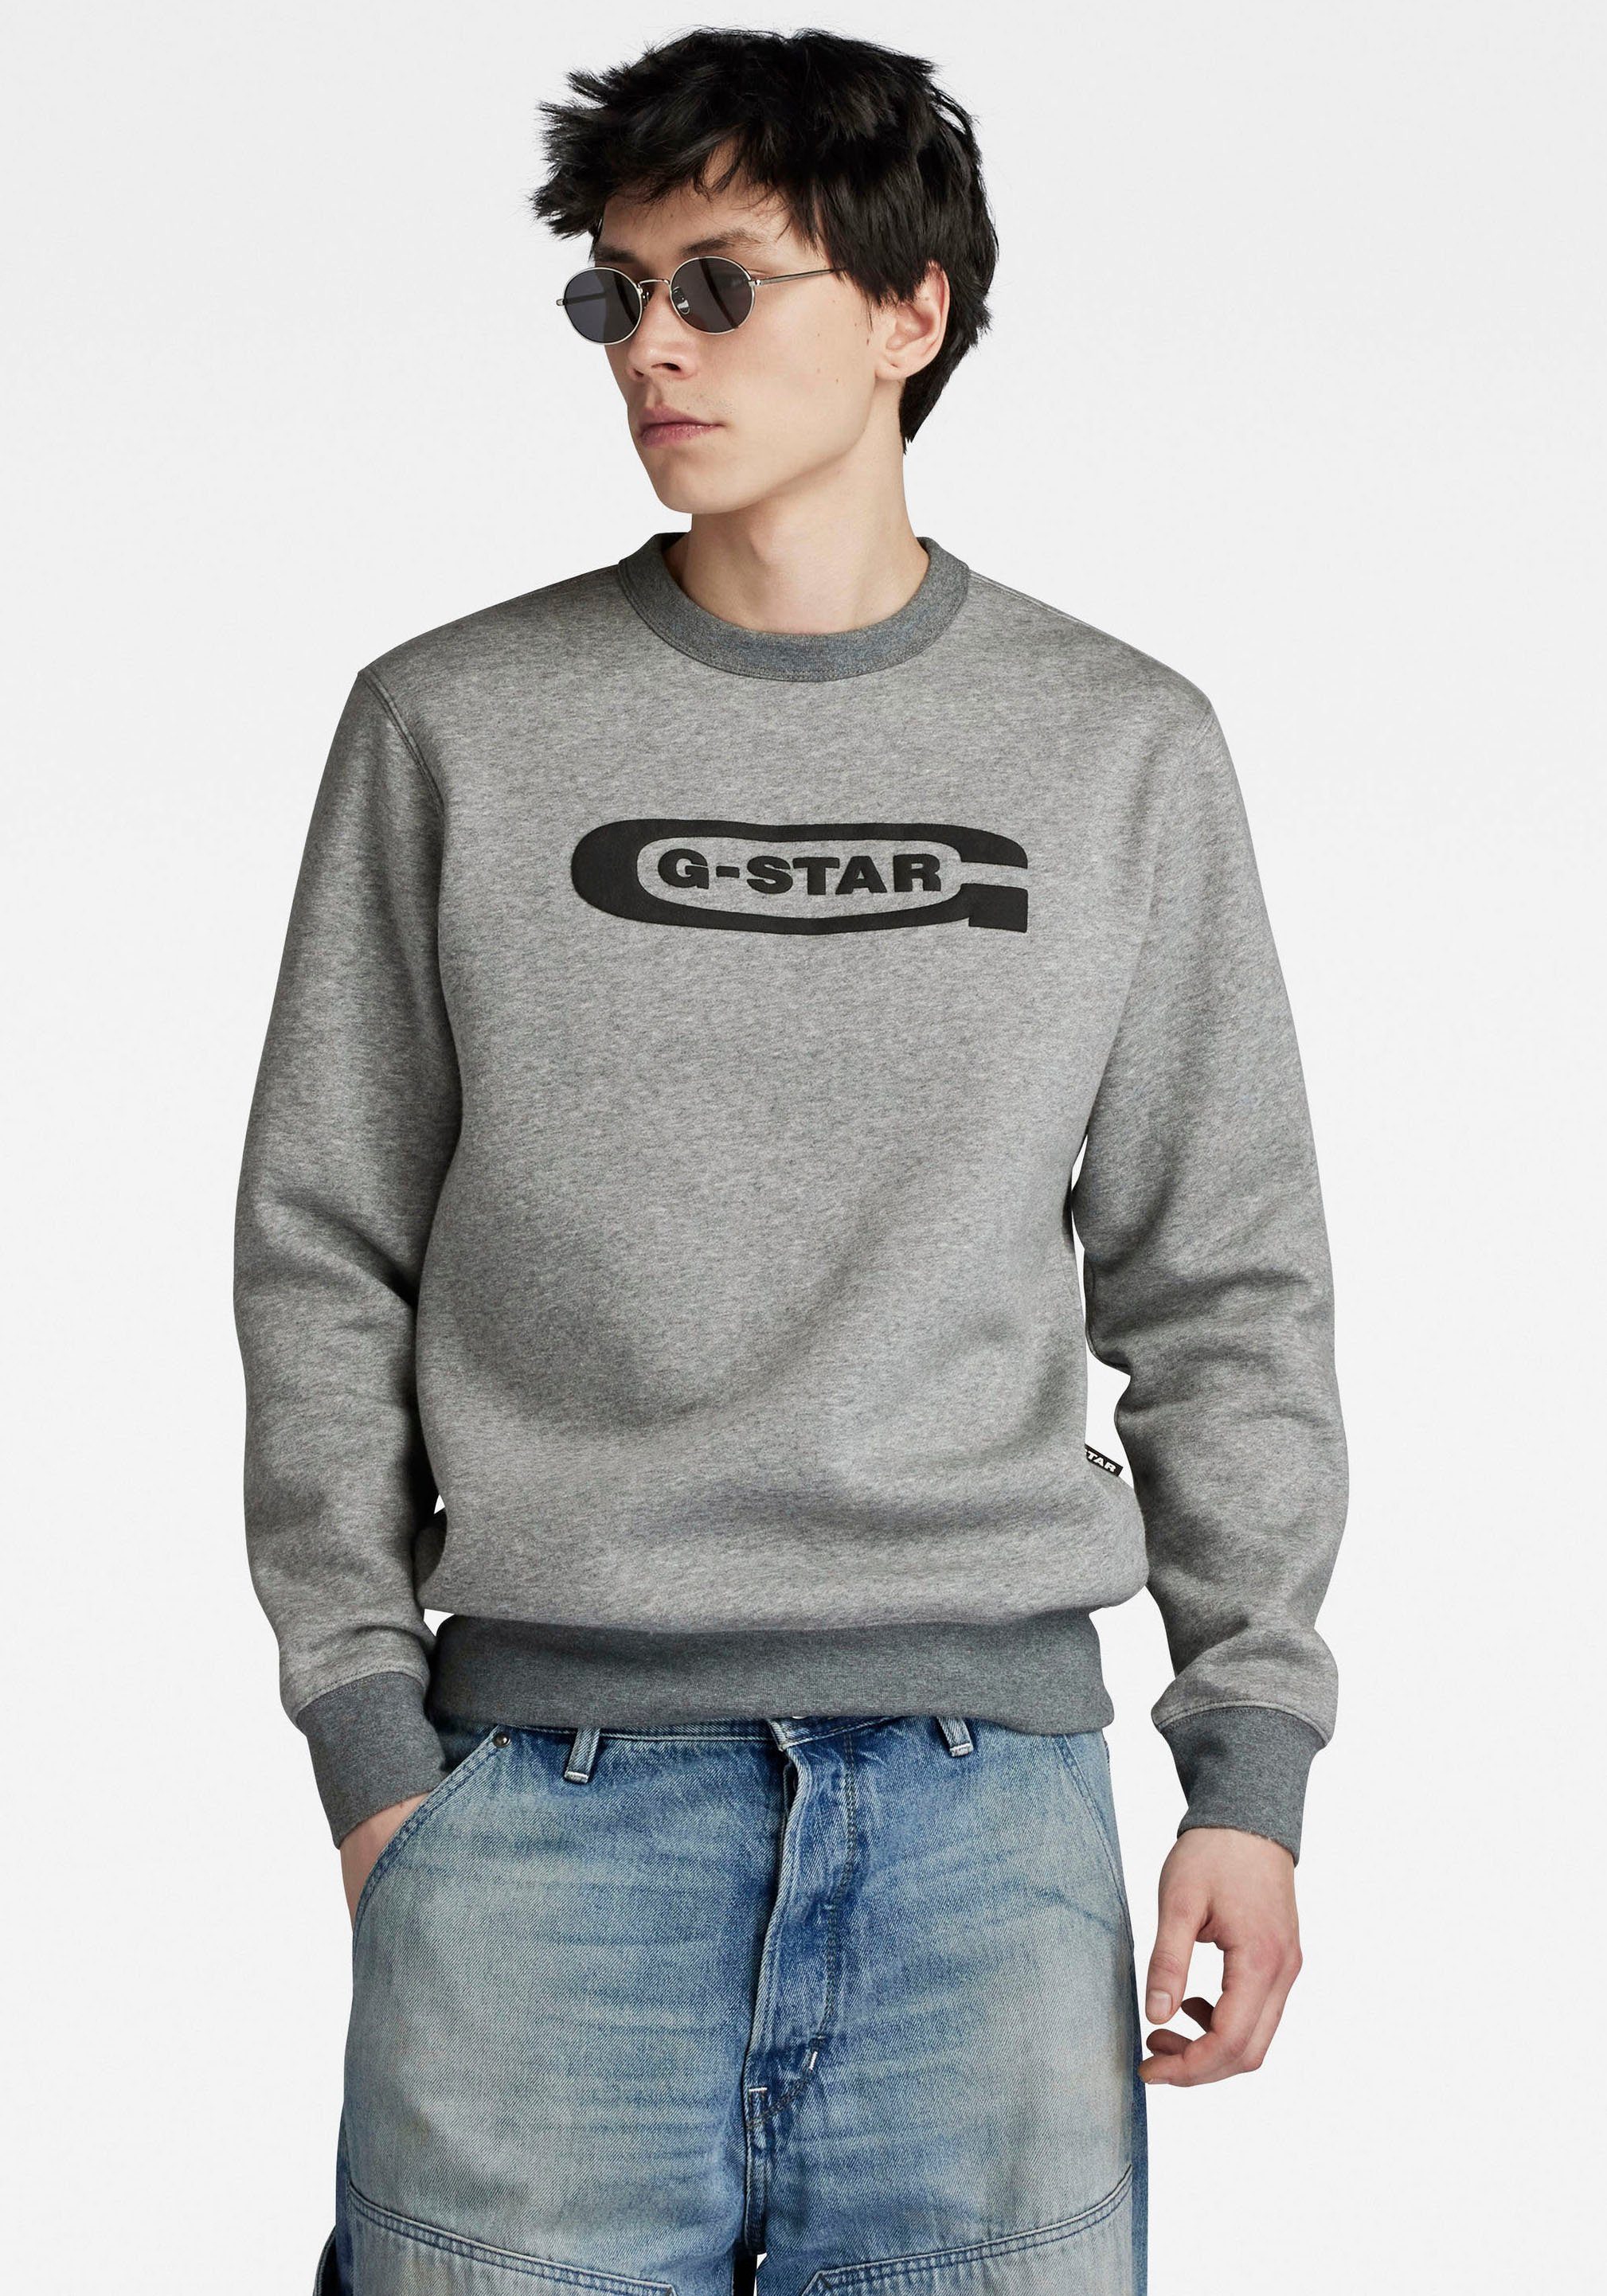 G-Star RAW Sweatshirt Old school logo r sw medium grey htr | Sweatshirts